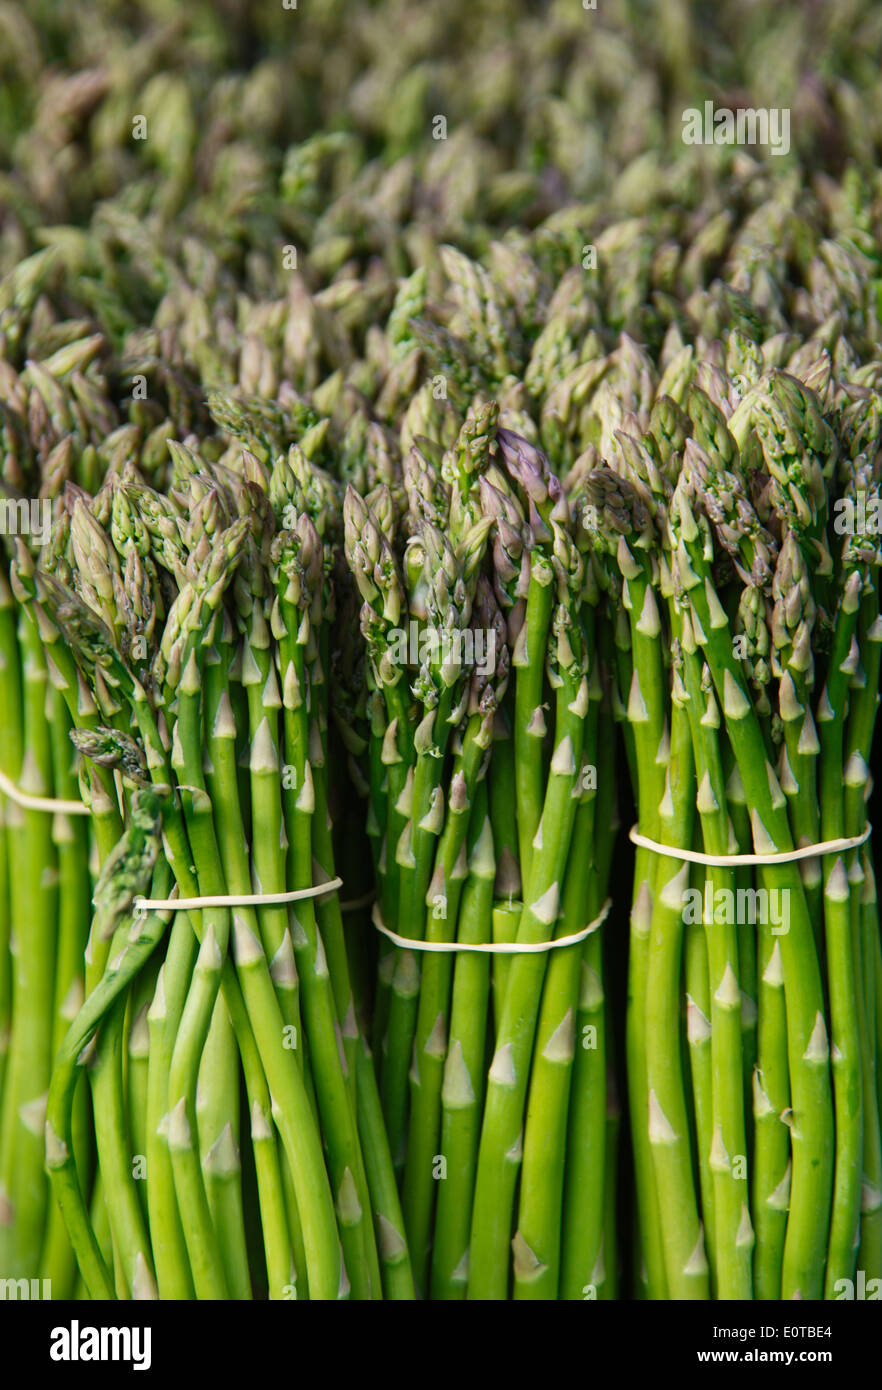 Asparagi alimentare poca profondità di campo verde Foto Stock